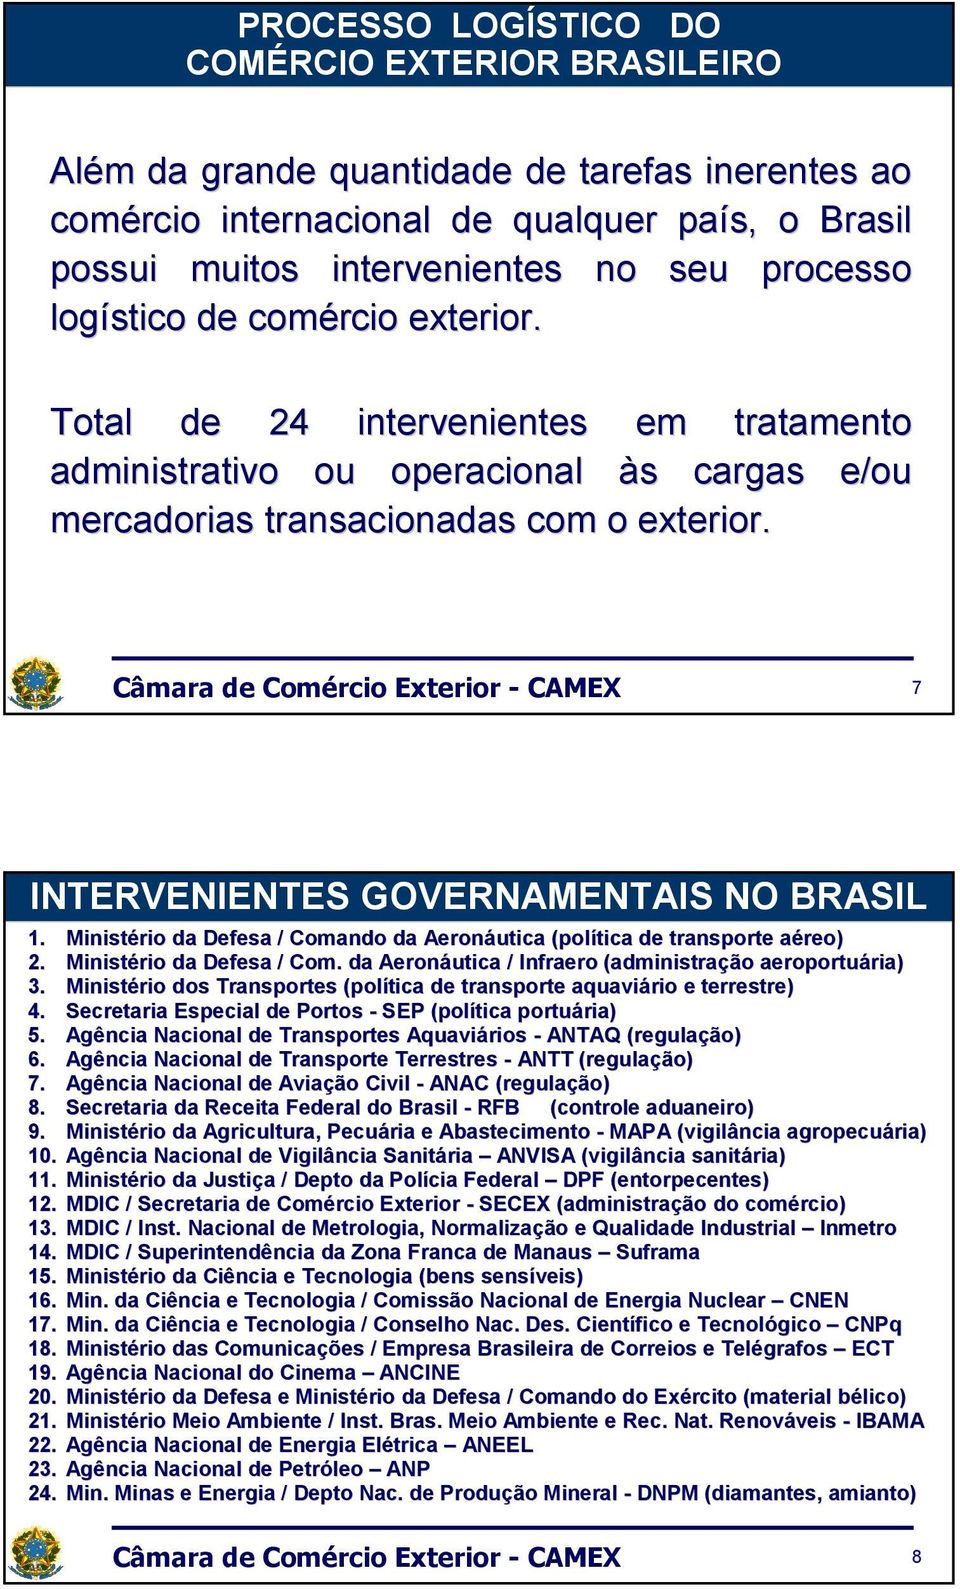 7 INTERVENIENTES GOVERNAMENTAIS NO BRASIL 1. Ministério da Defesa / Comando da Aeronáutica (política de transporte aéreo) a 2. Ministério da Defesa / Com. da Aeronáutica / Infraero (administração aeroportuária) ria) 3.